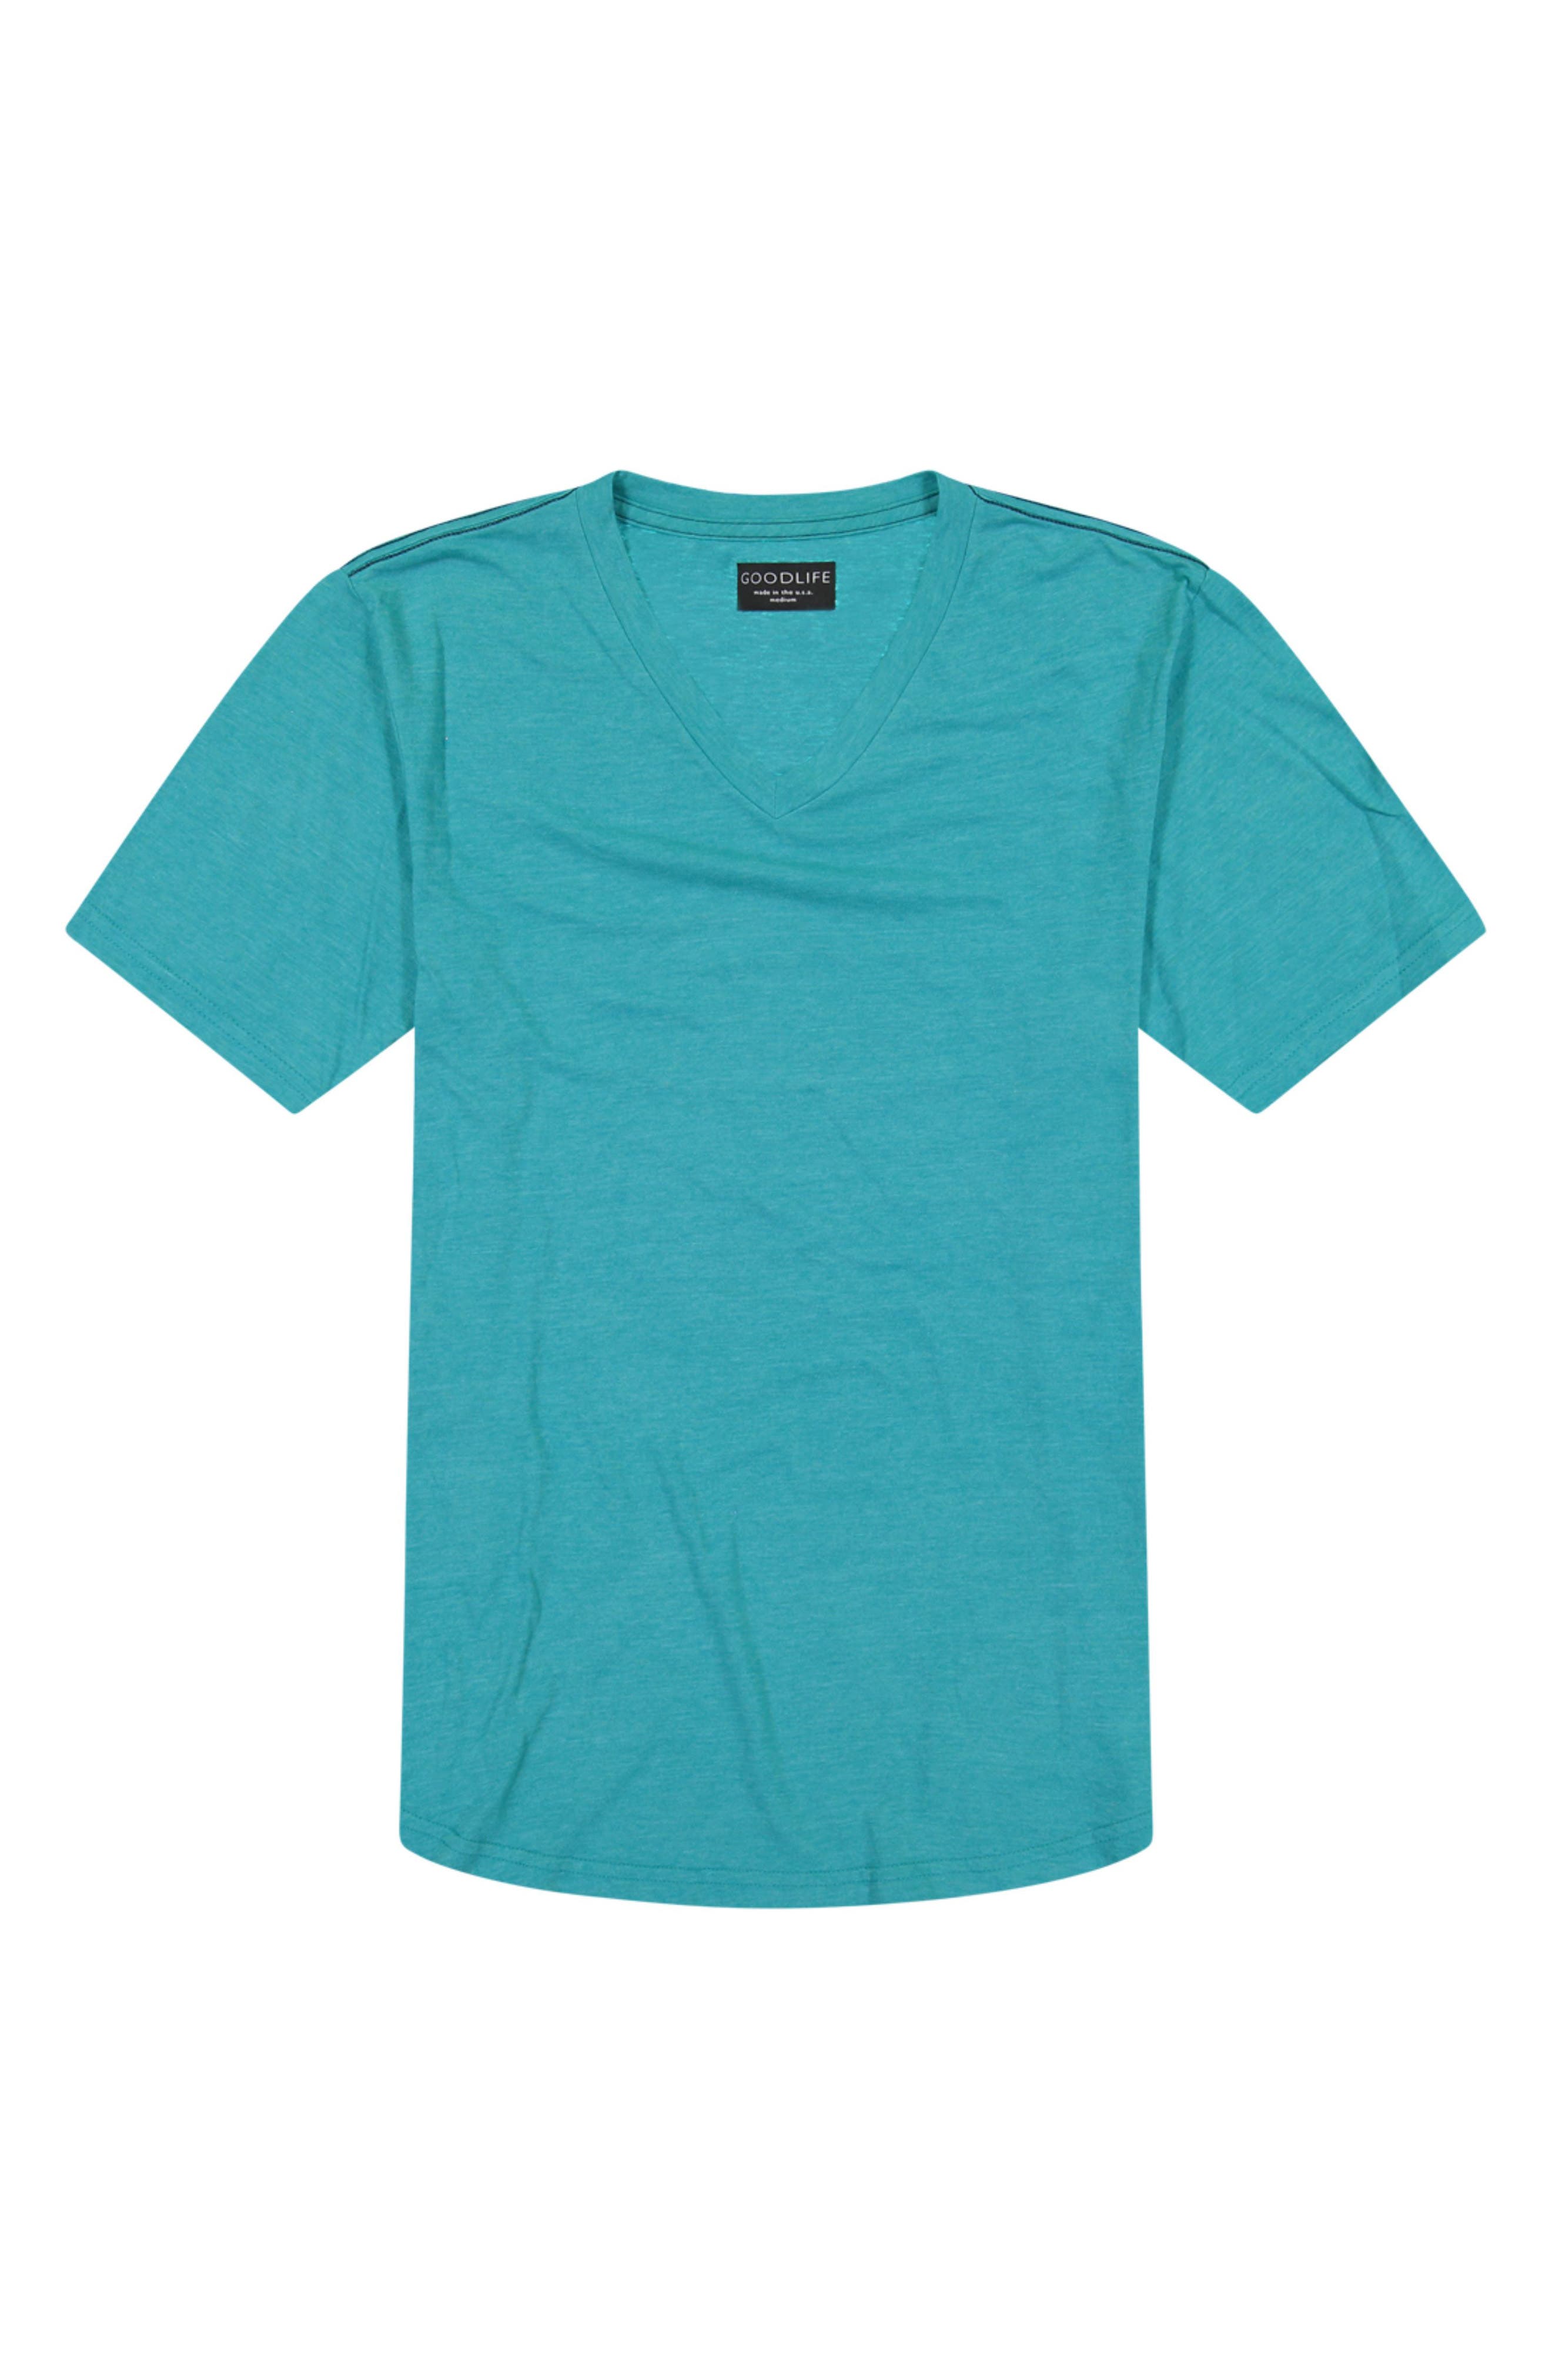 Goodlife | Scallop Triblend V-Neck Slim Fit T-Shirt | Nordstrom Rack